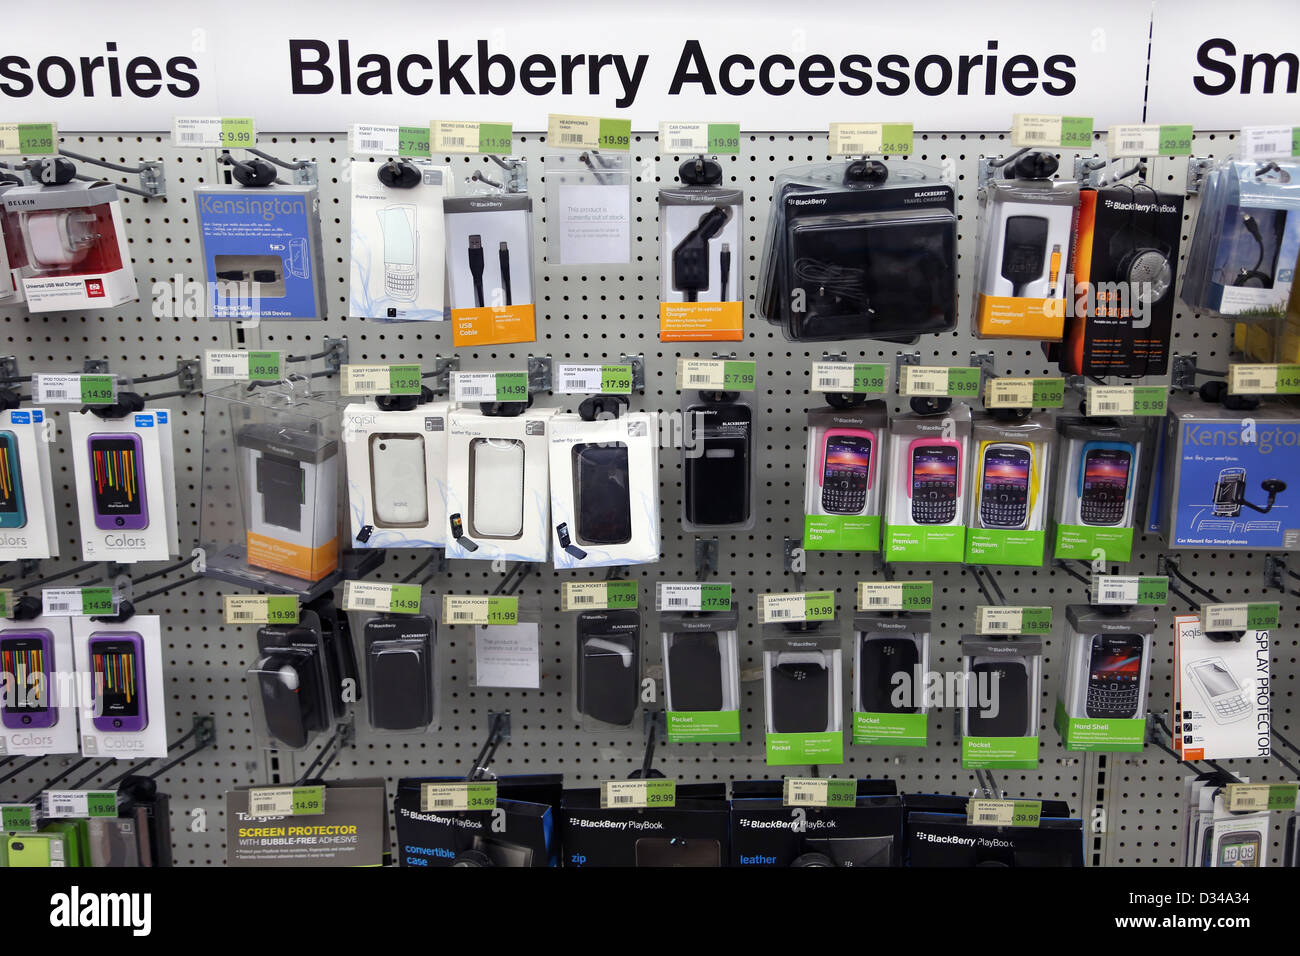 https://c8.alamy.com/compes/d34a34/una-gama-de-accesorios-para-telefono-movil-blackberry-en-la-tienda-d34a34.jpg